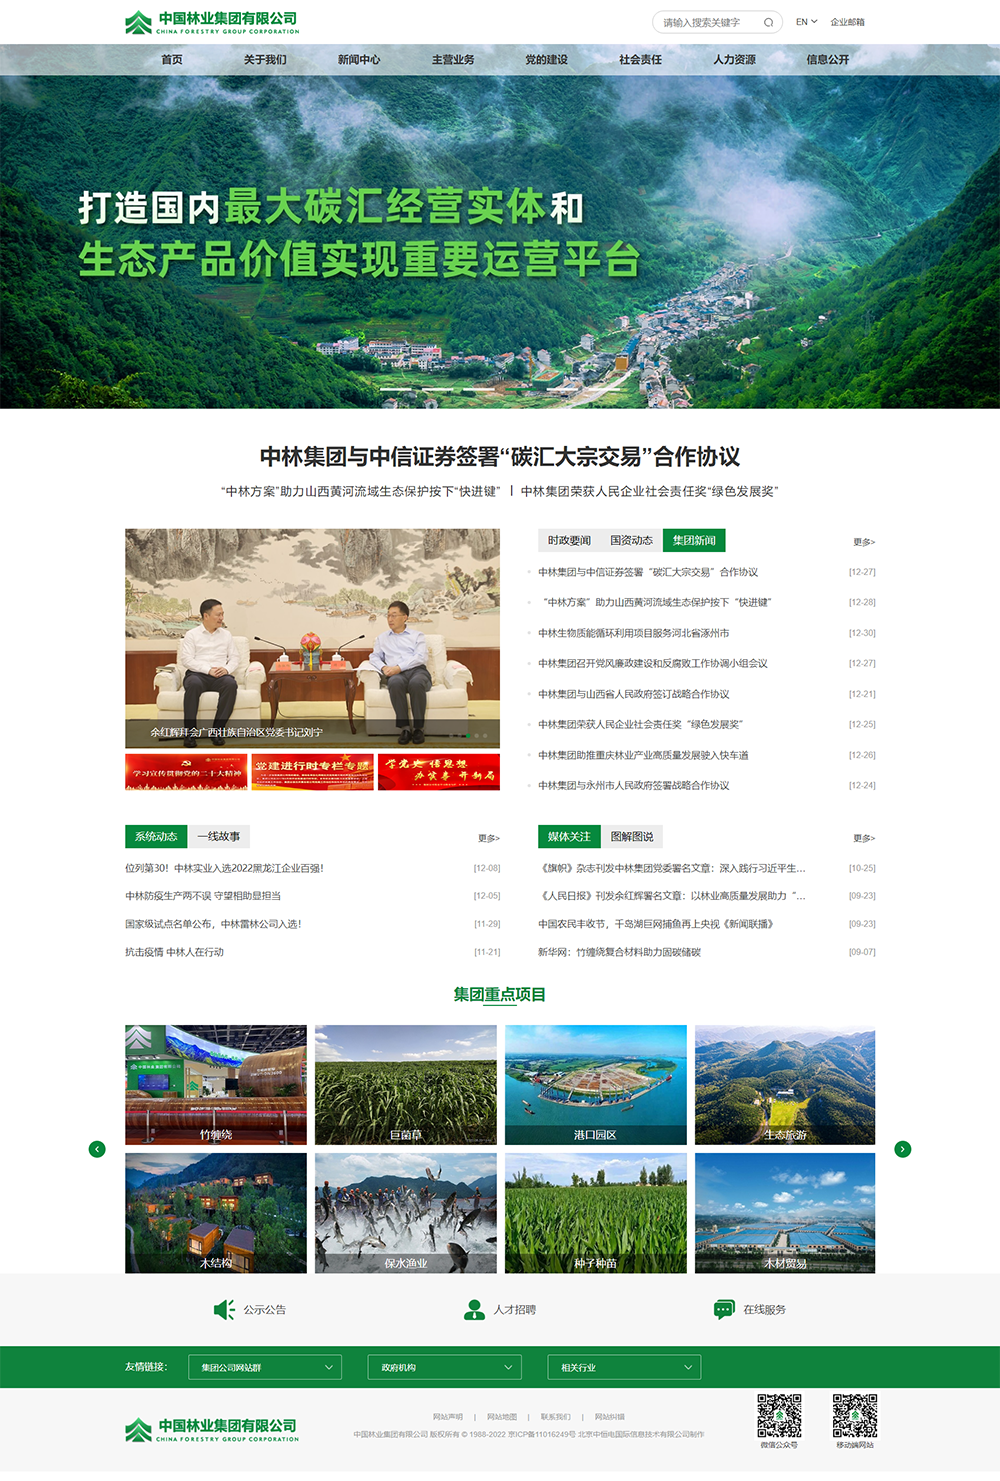 中国林业集团 _ 首页.png